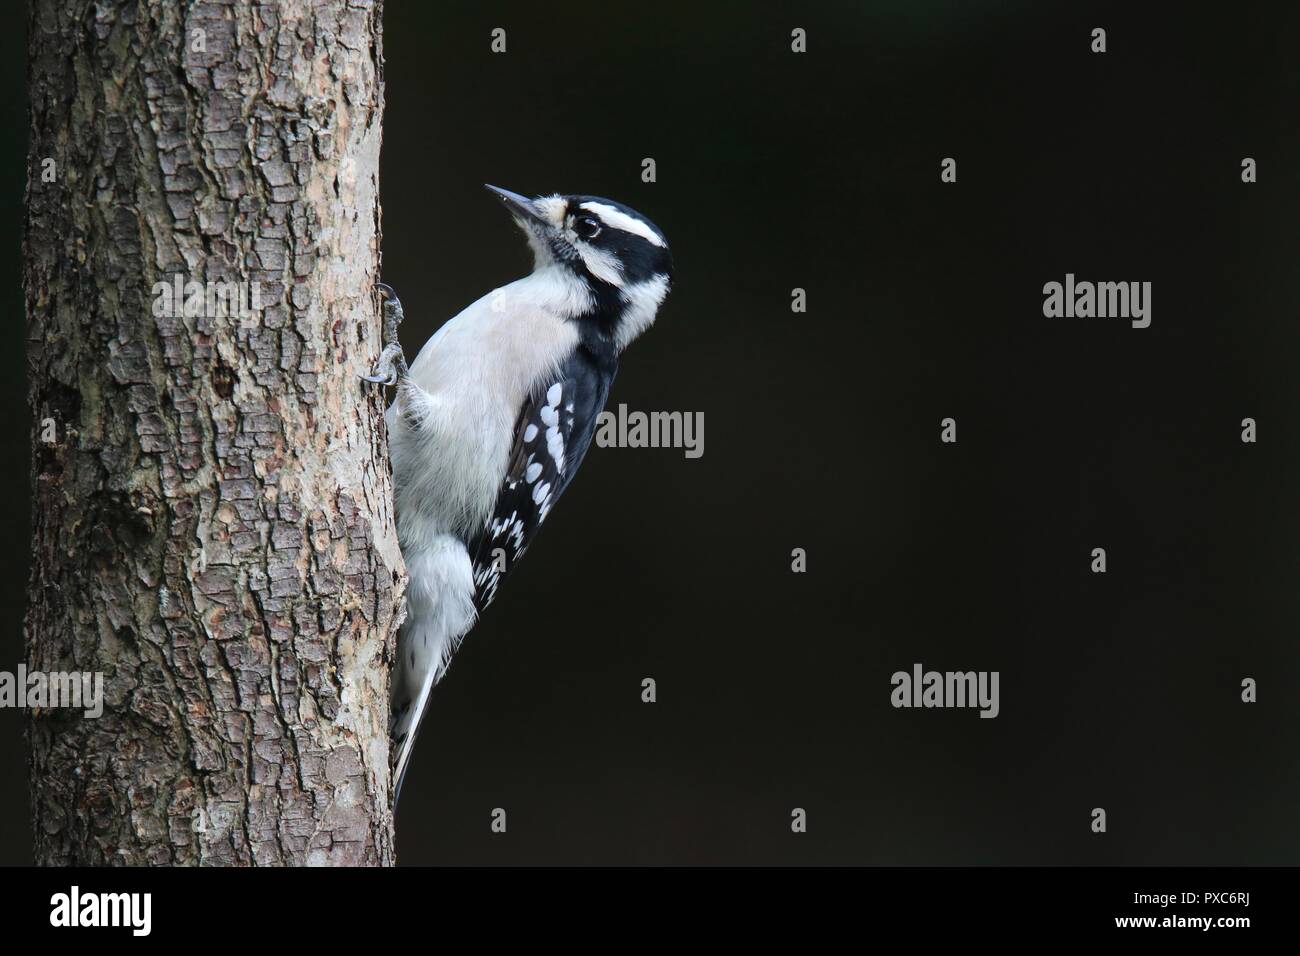 Eine weibliche Downy Woodpecker Picoides pubescens Nahrungssuche auf einem Baumstamm mit dunklem Hintergrund. Bild beinhaltet negative Space. Stockfoto